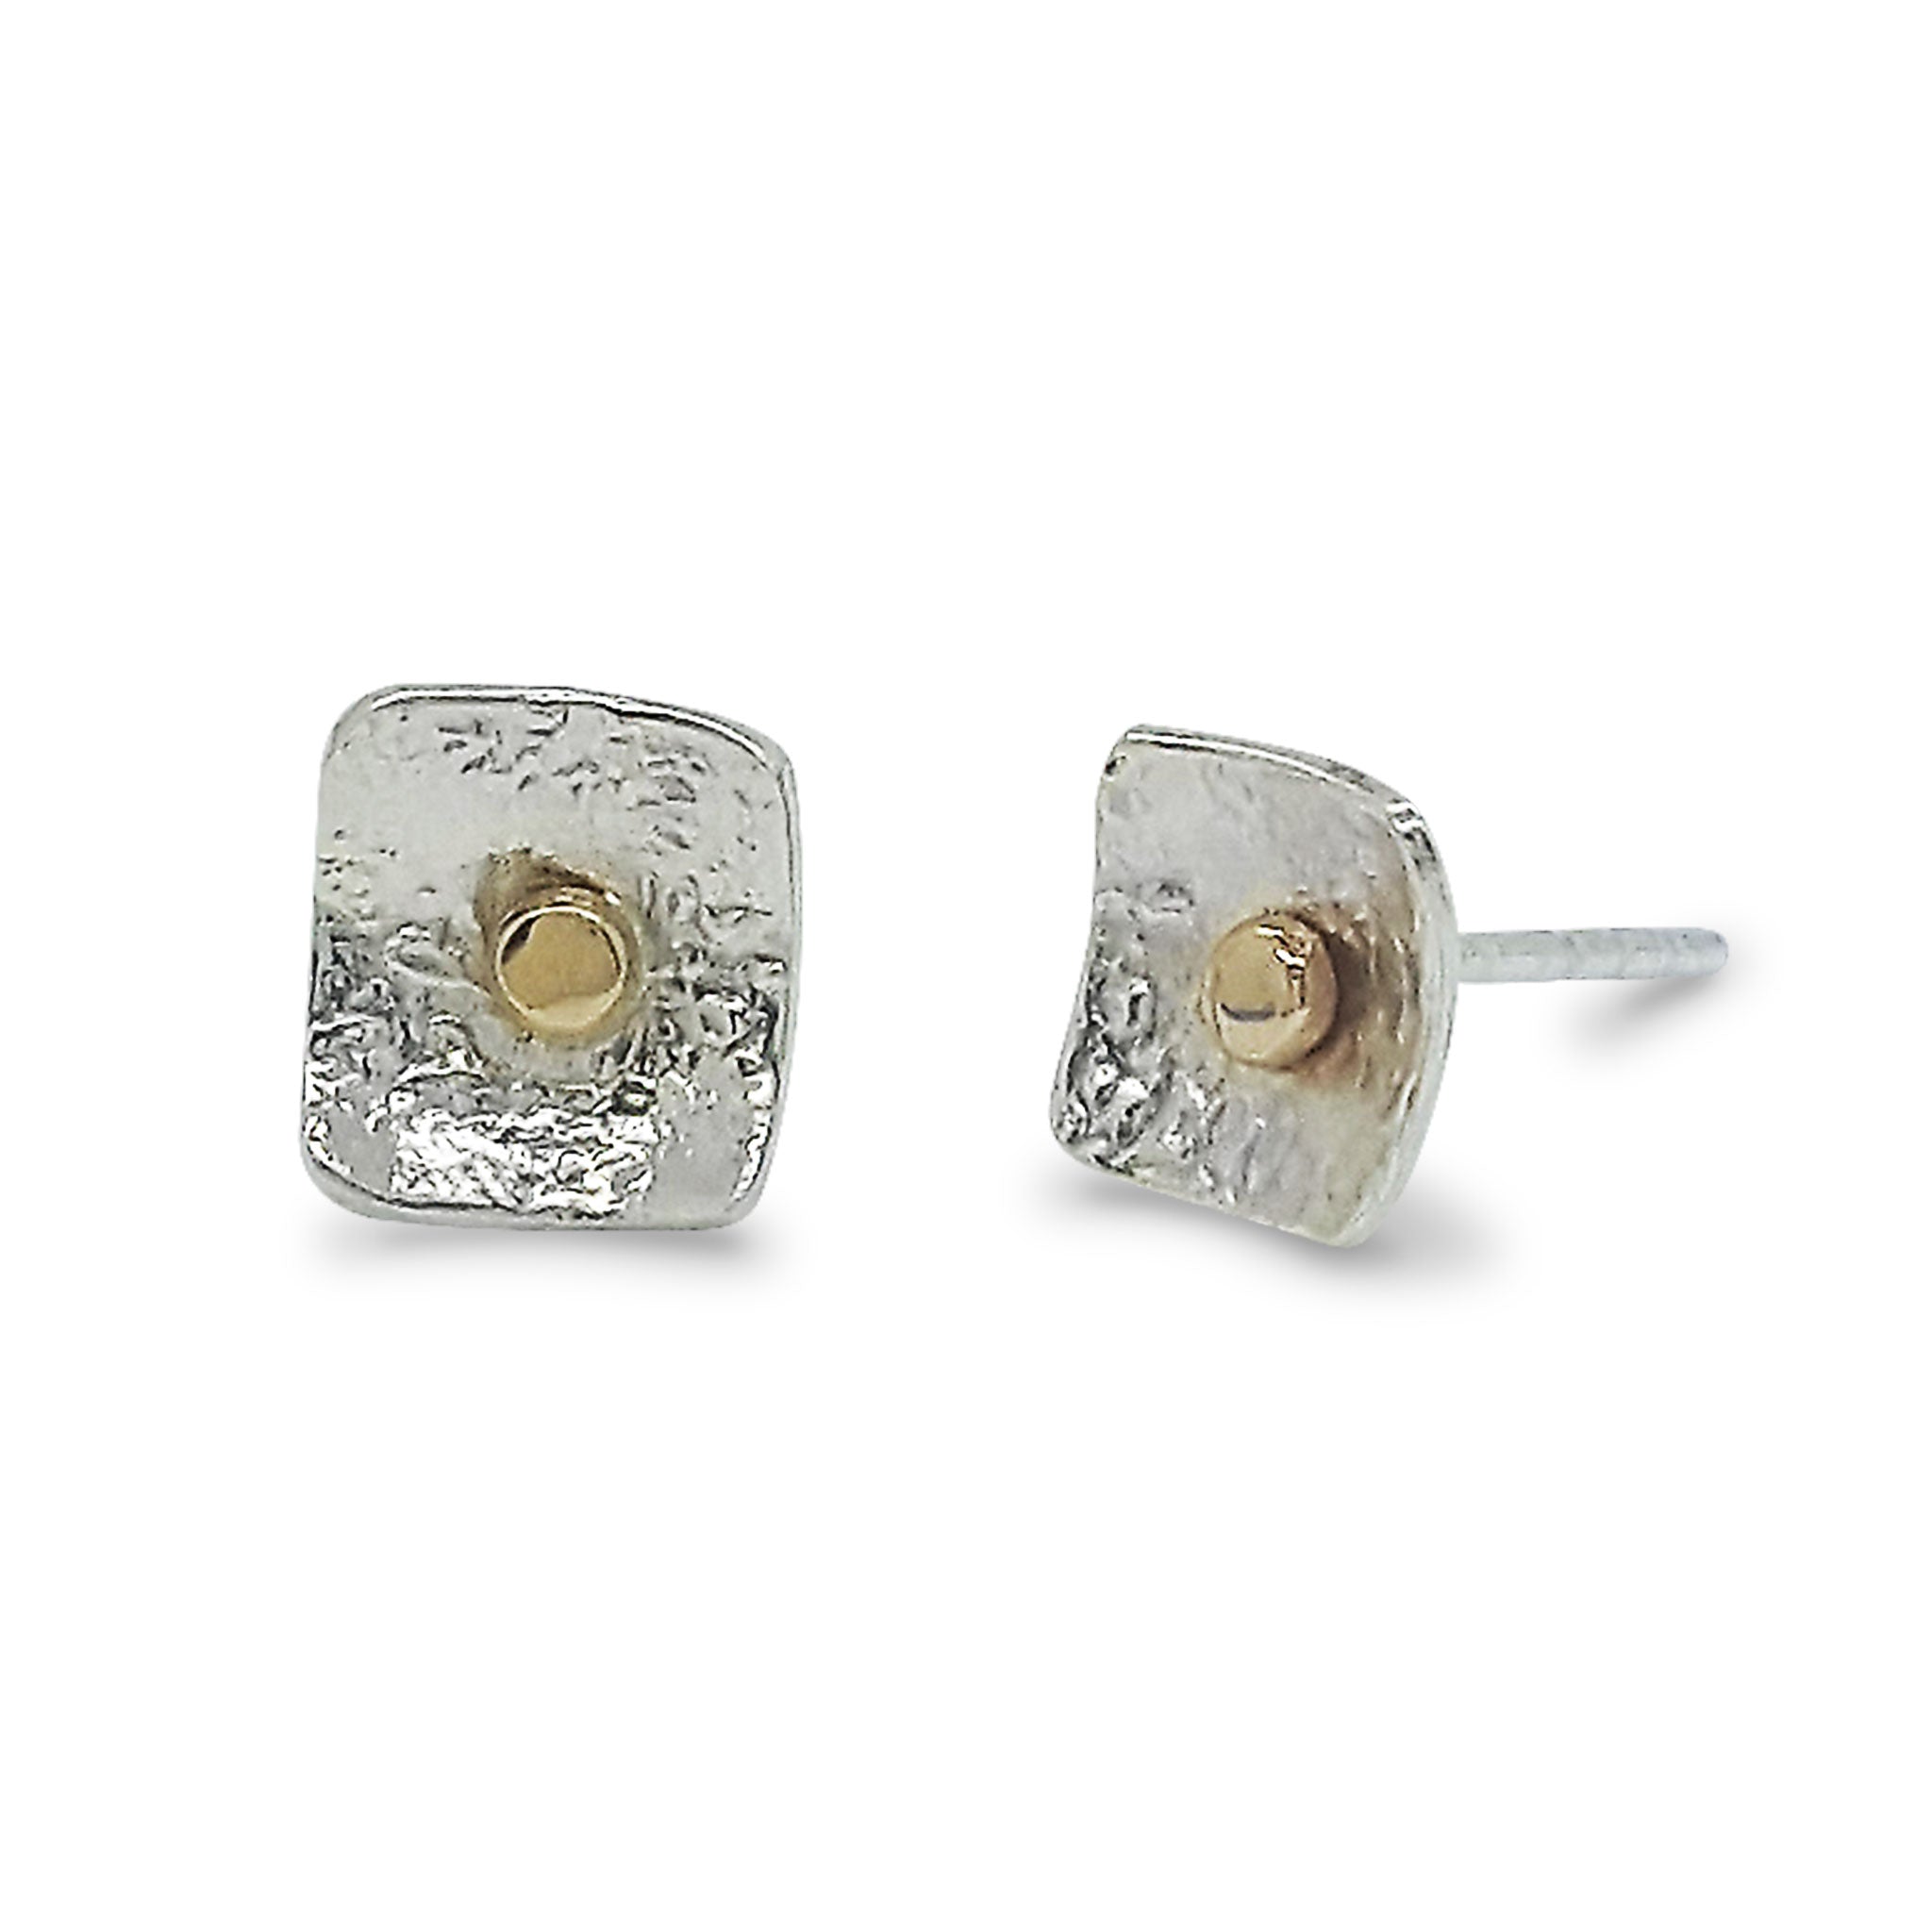 Small Square Post Earrings with 14K Gold Dot - E1506 E1506KS